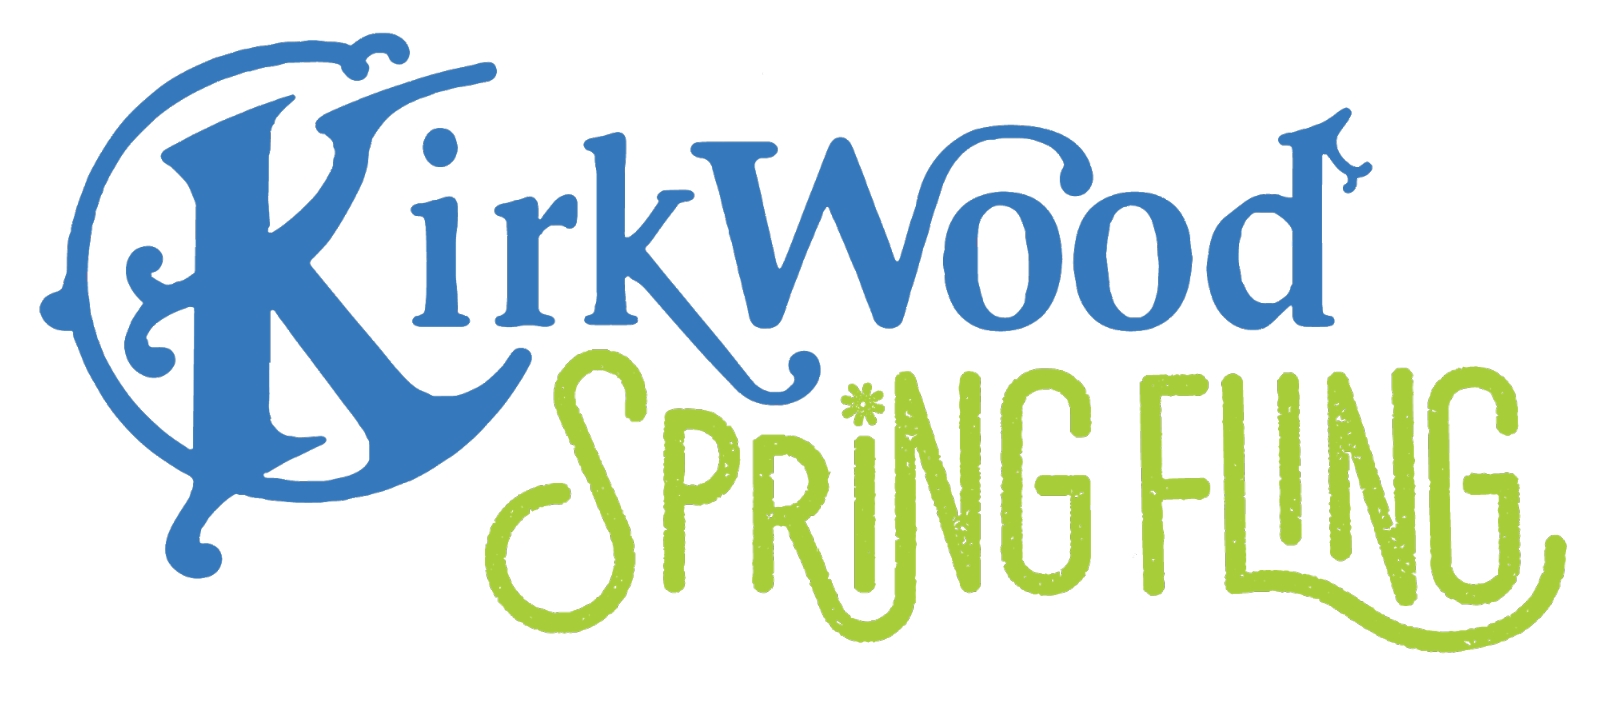 CANCELLED: 2020 Kirkwood Spring Fling cover image